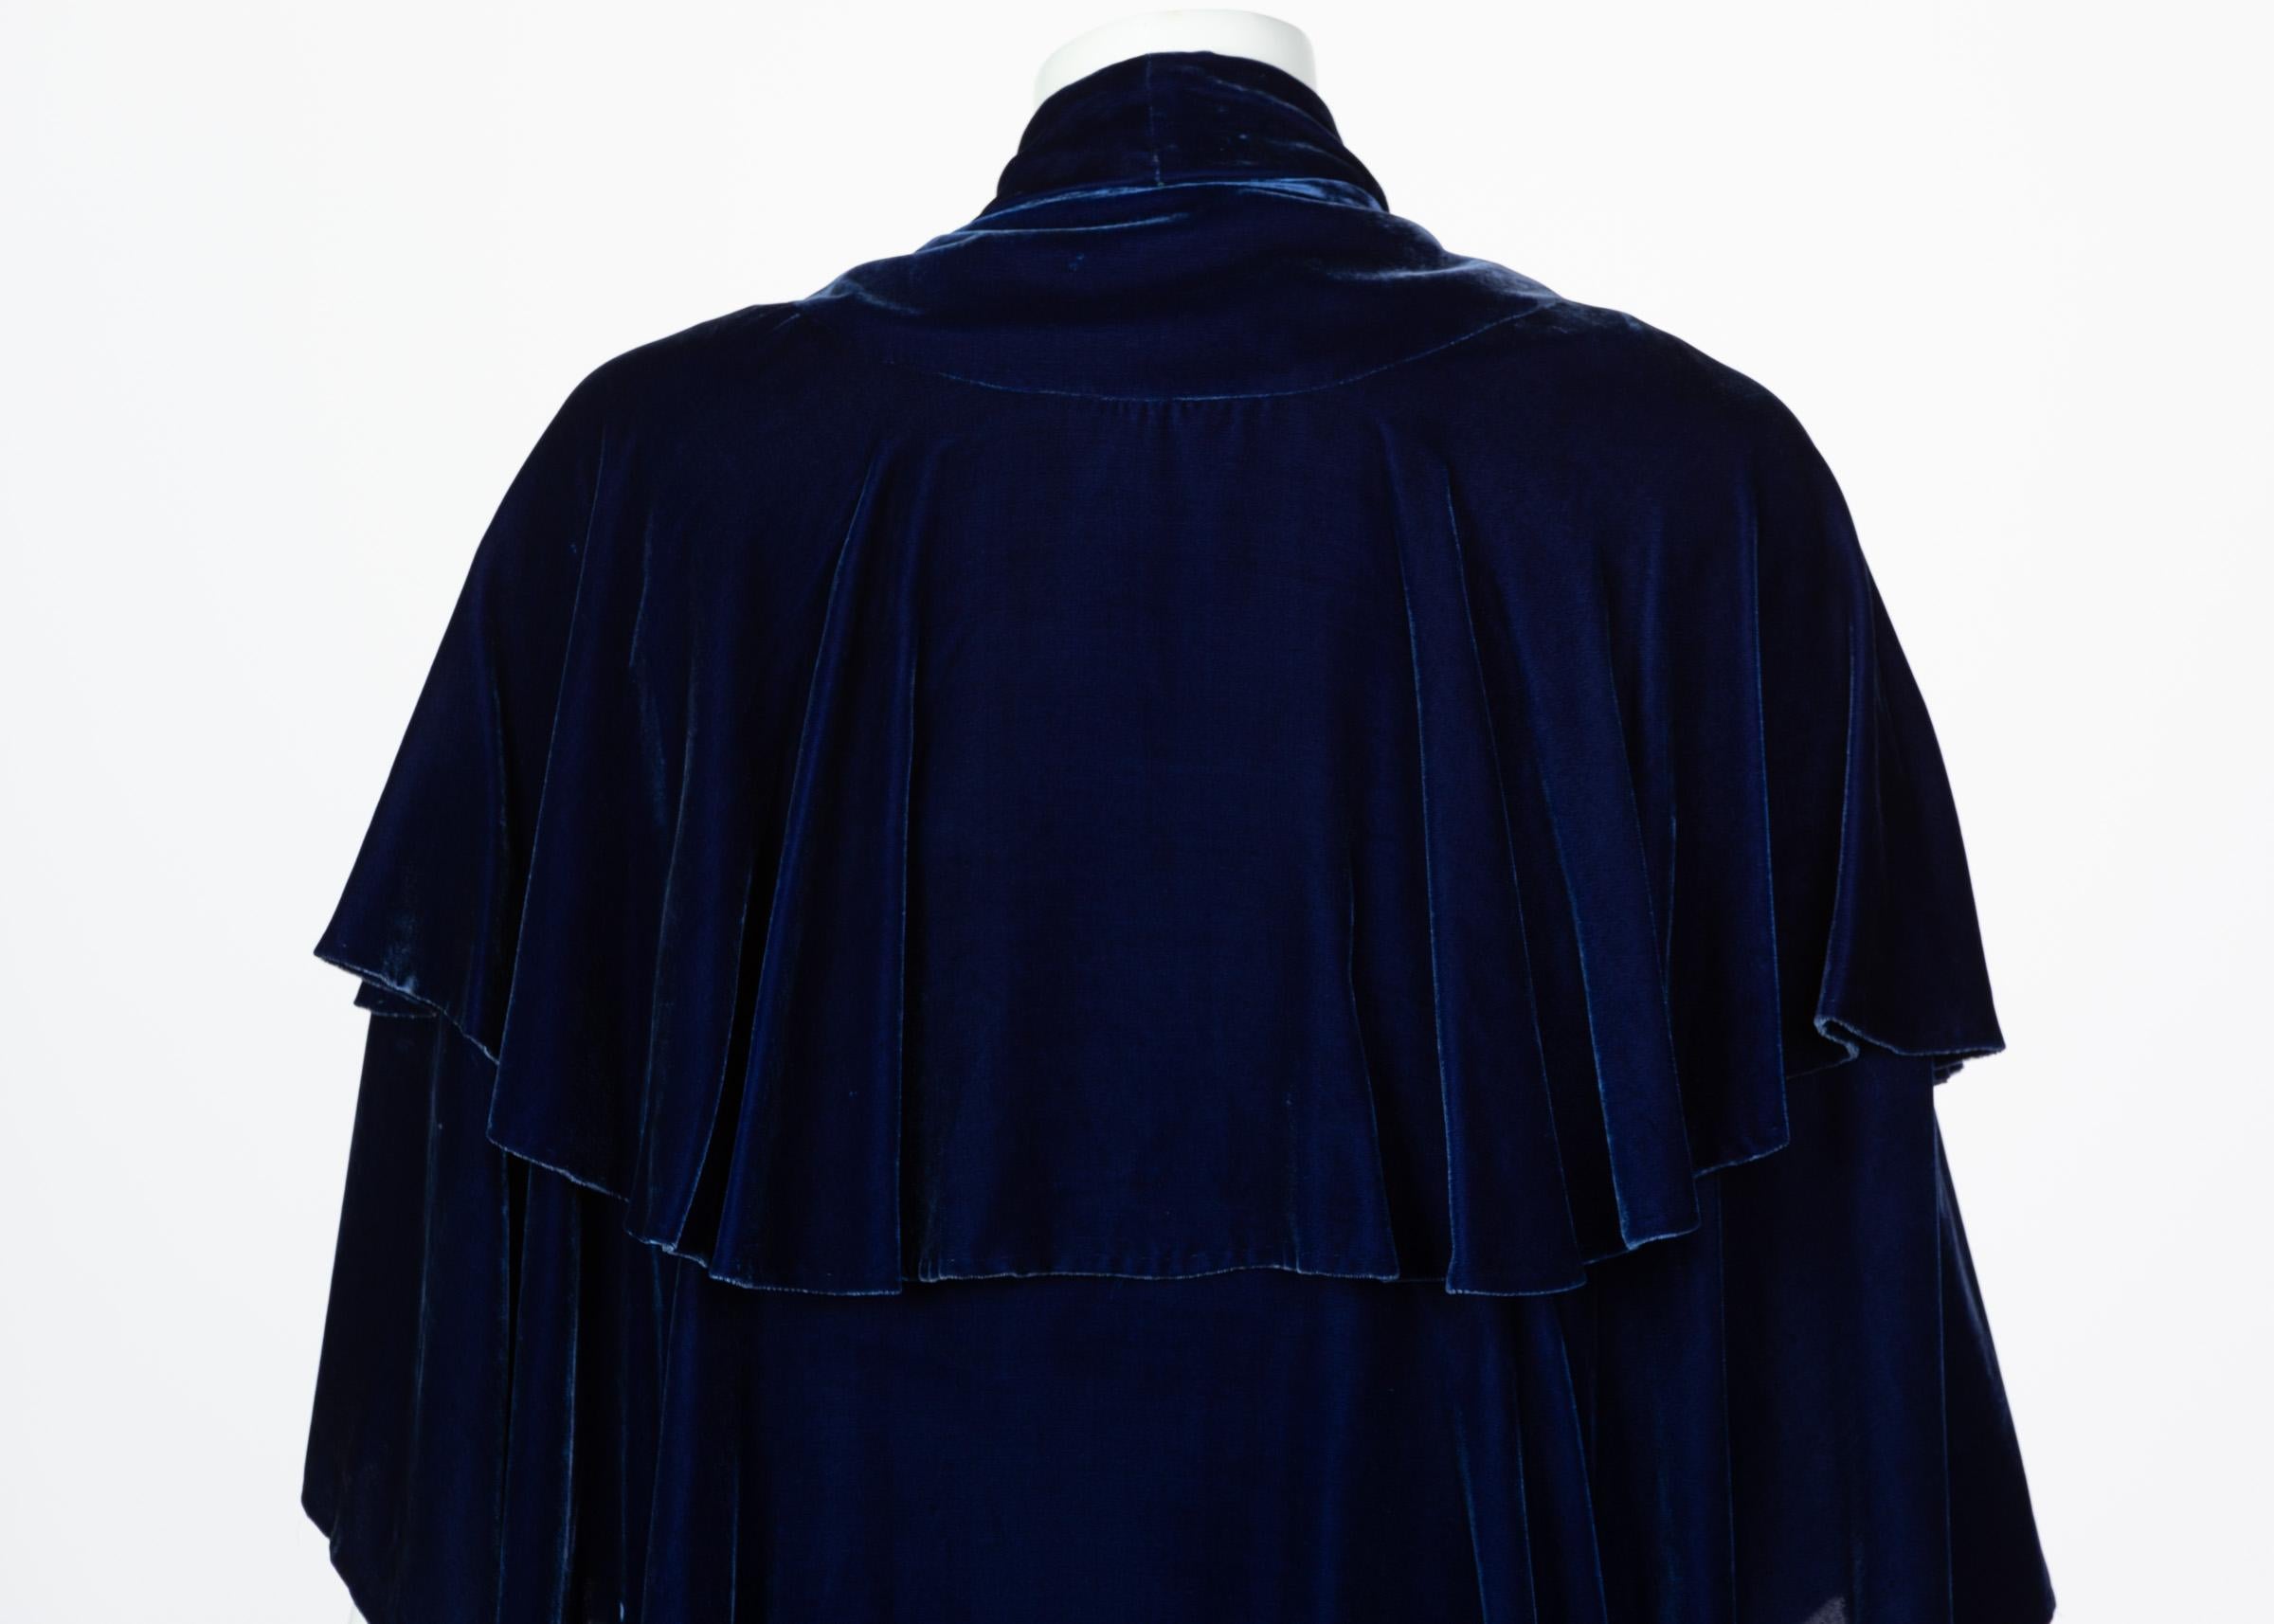 I Magnin & Co. Blue Silk velvet Evening Cape Coat, 1930s For Sale 5